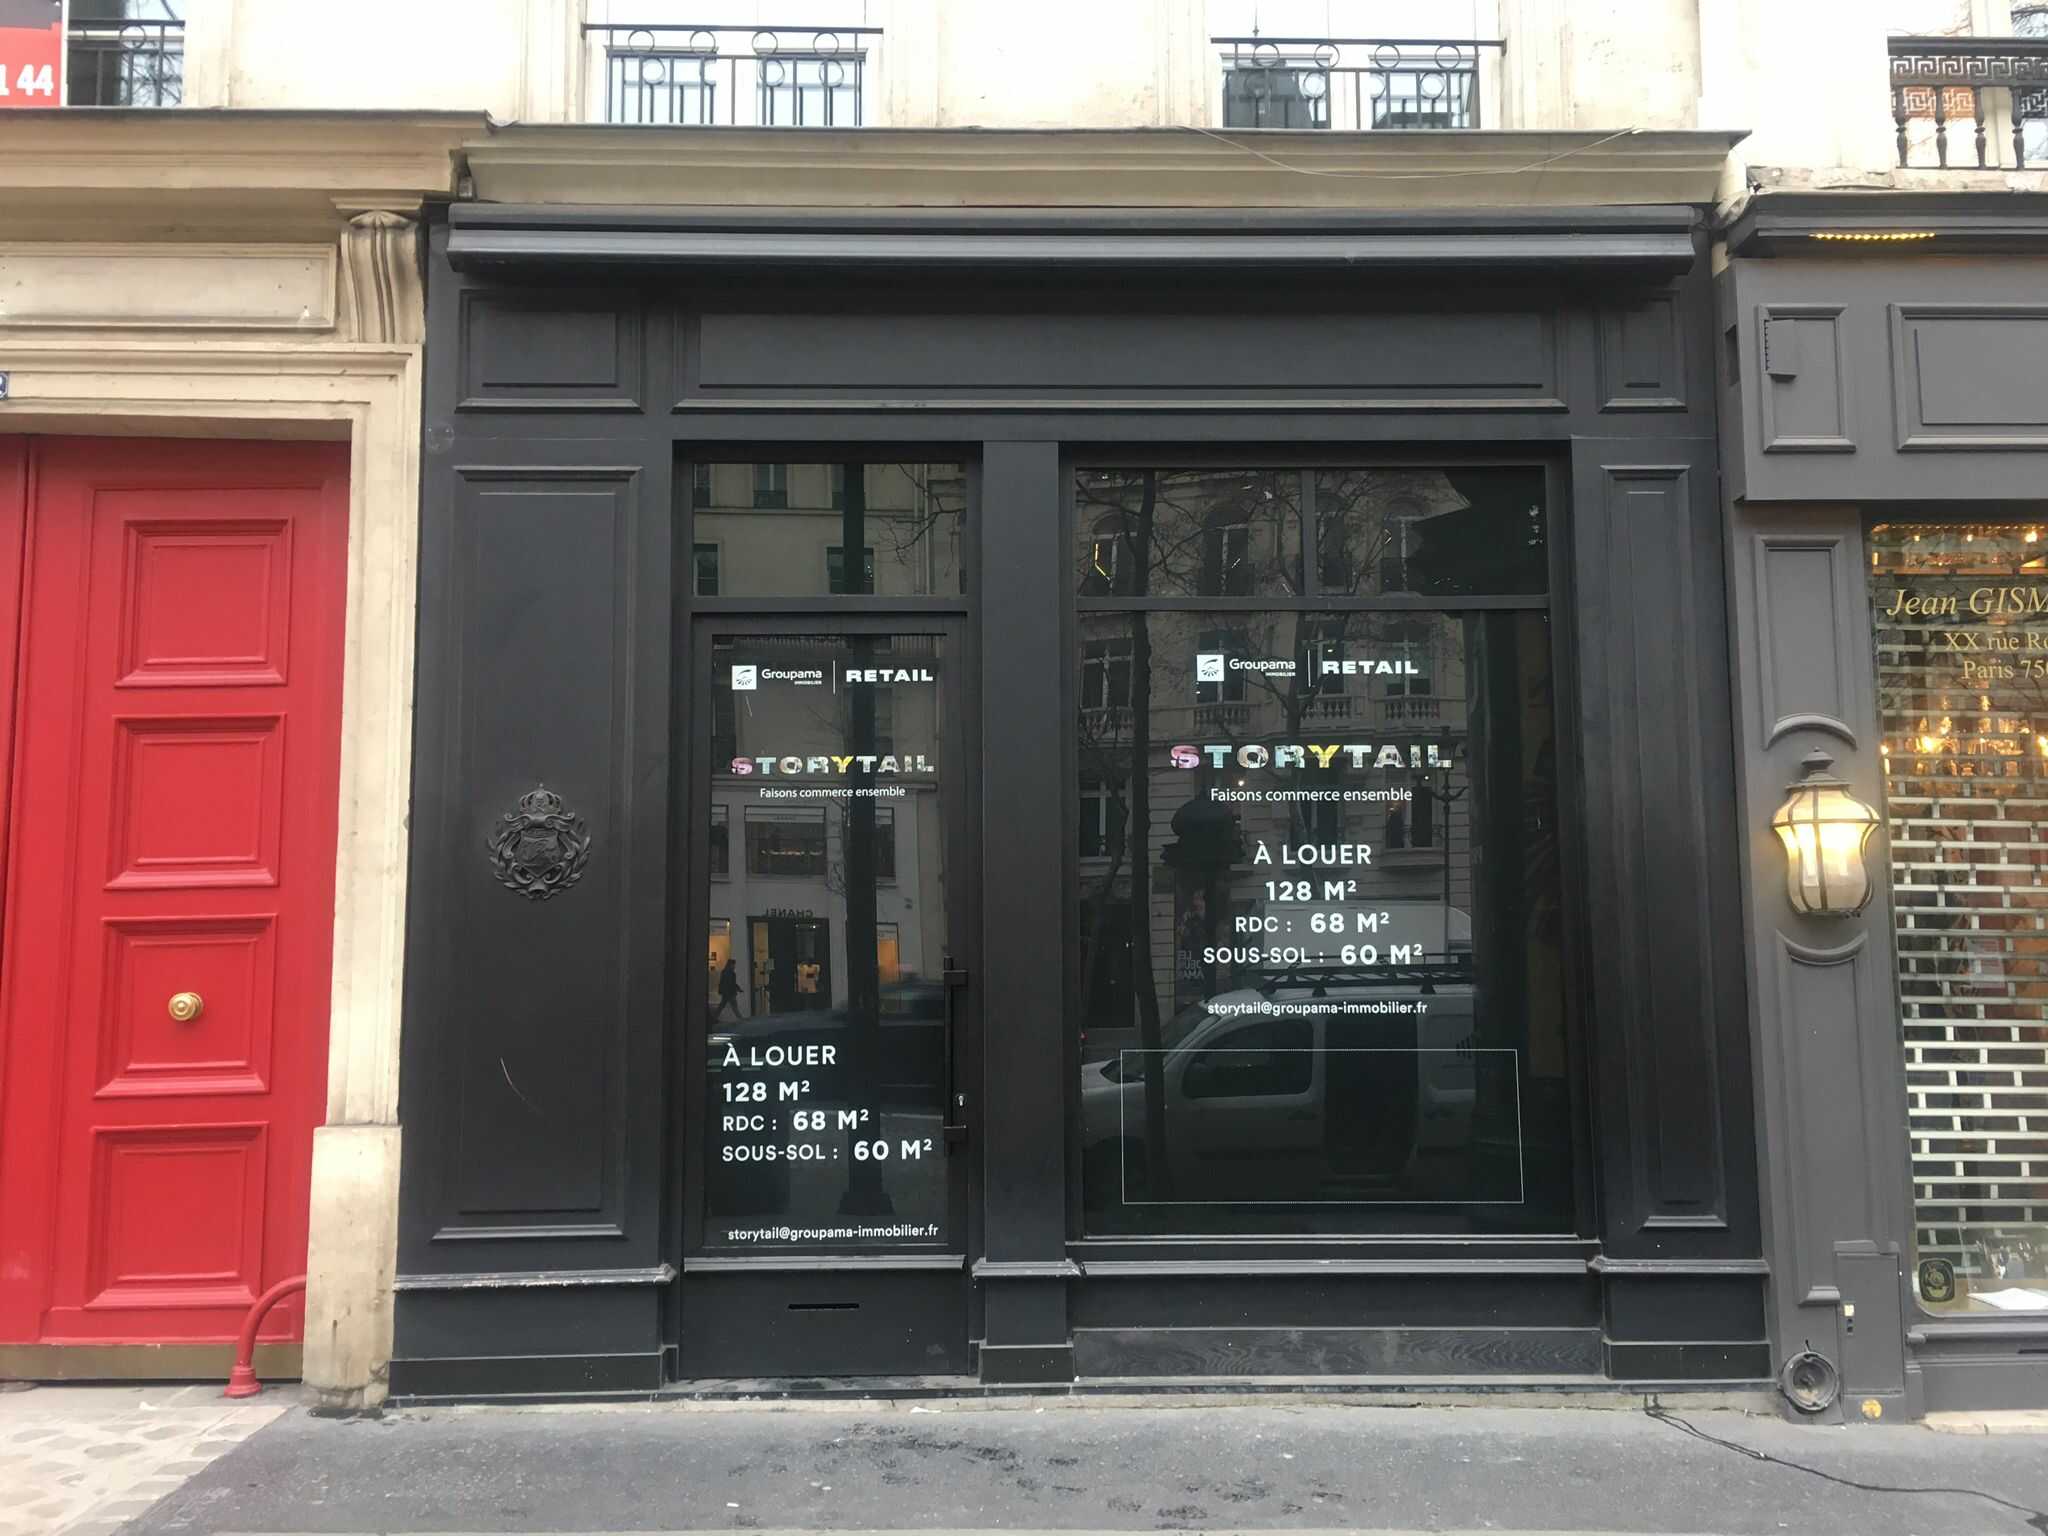 22 rue Royale - 75008 PARIS